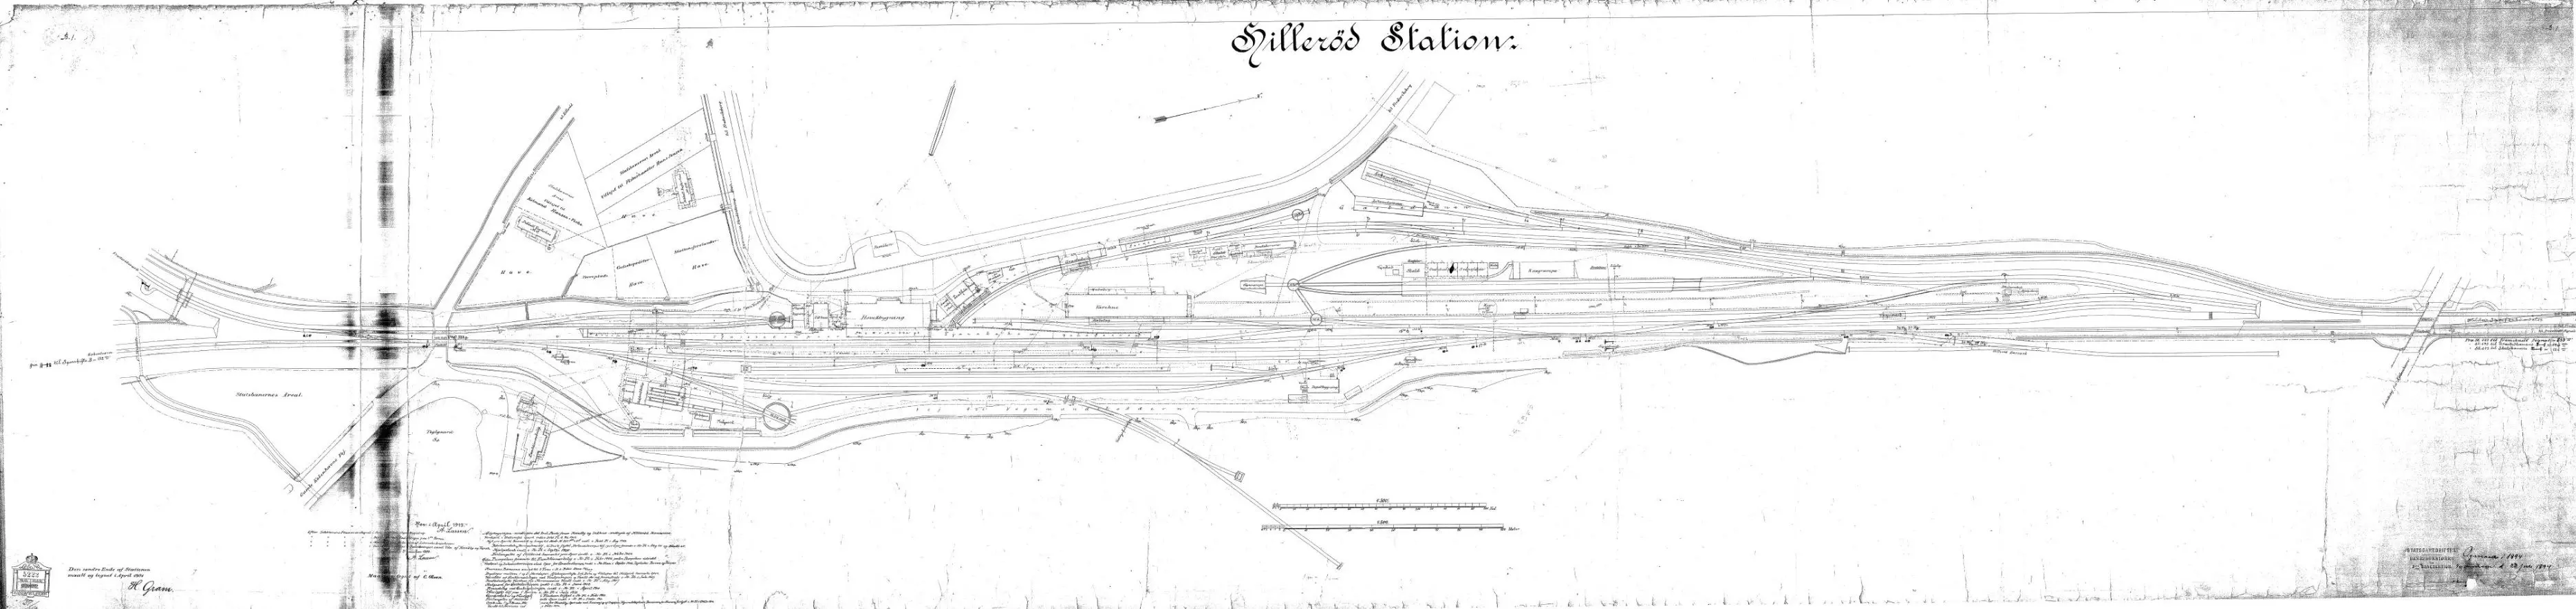 Sporplan af Hillerød Station.